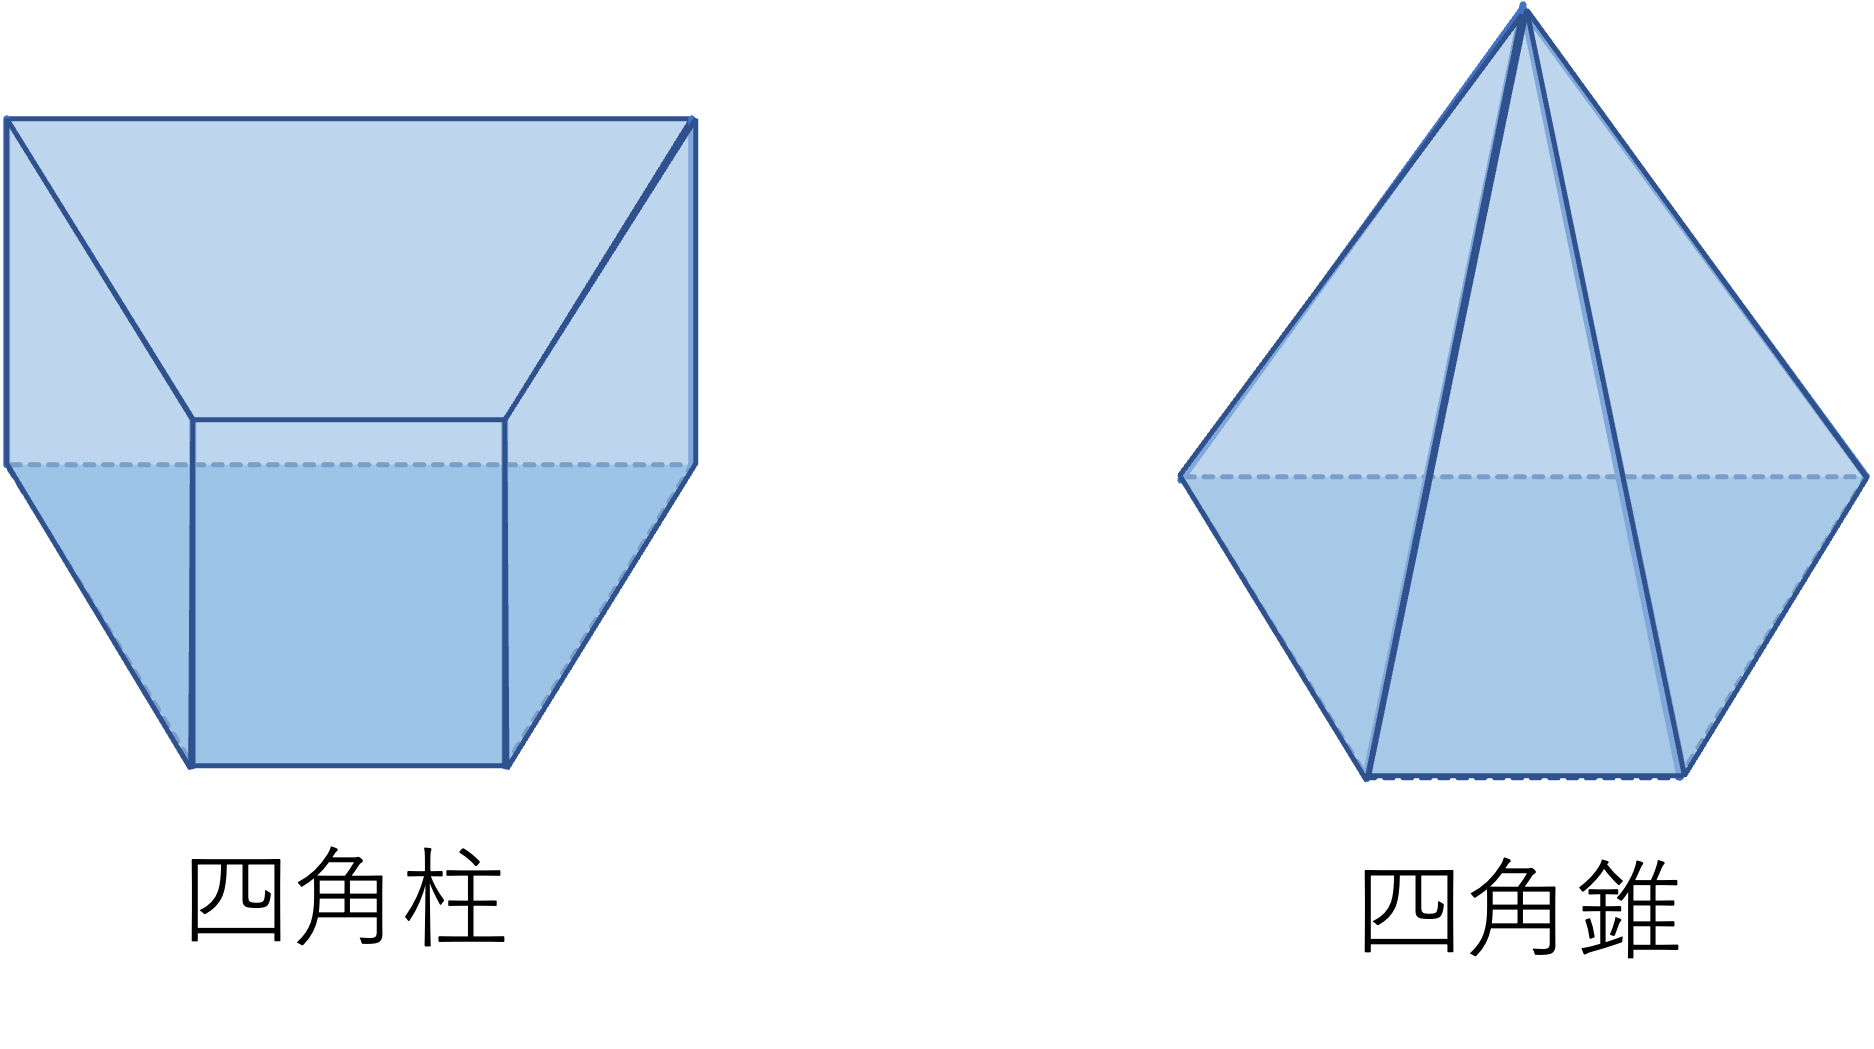 空間図形 立体 の総復習 四角柱 四角錐 円柱 円錐編 算数からやさしく解説 数学 統計教室の和から株式会社